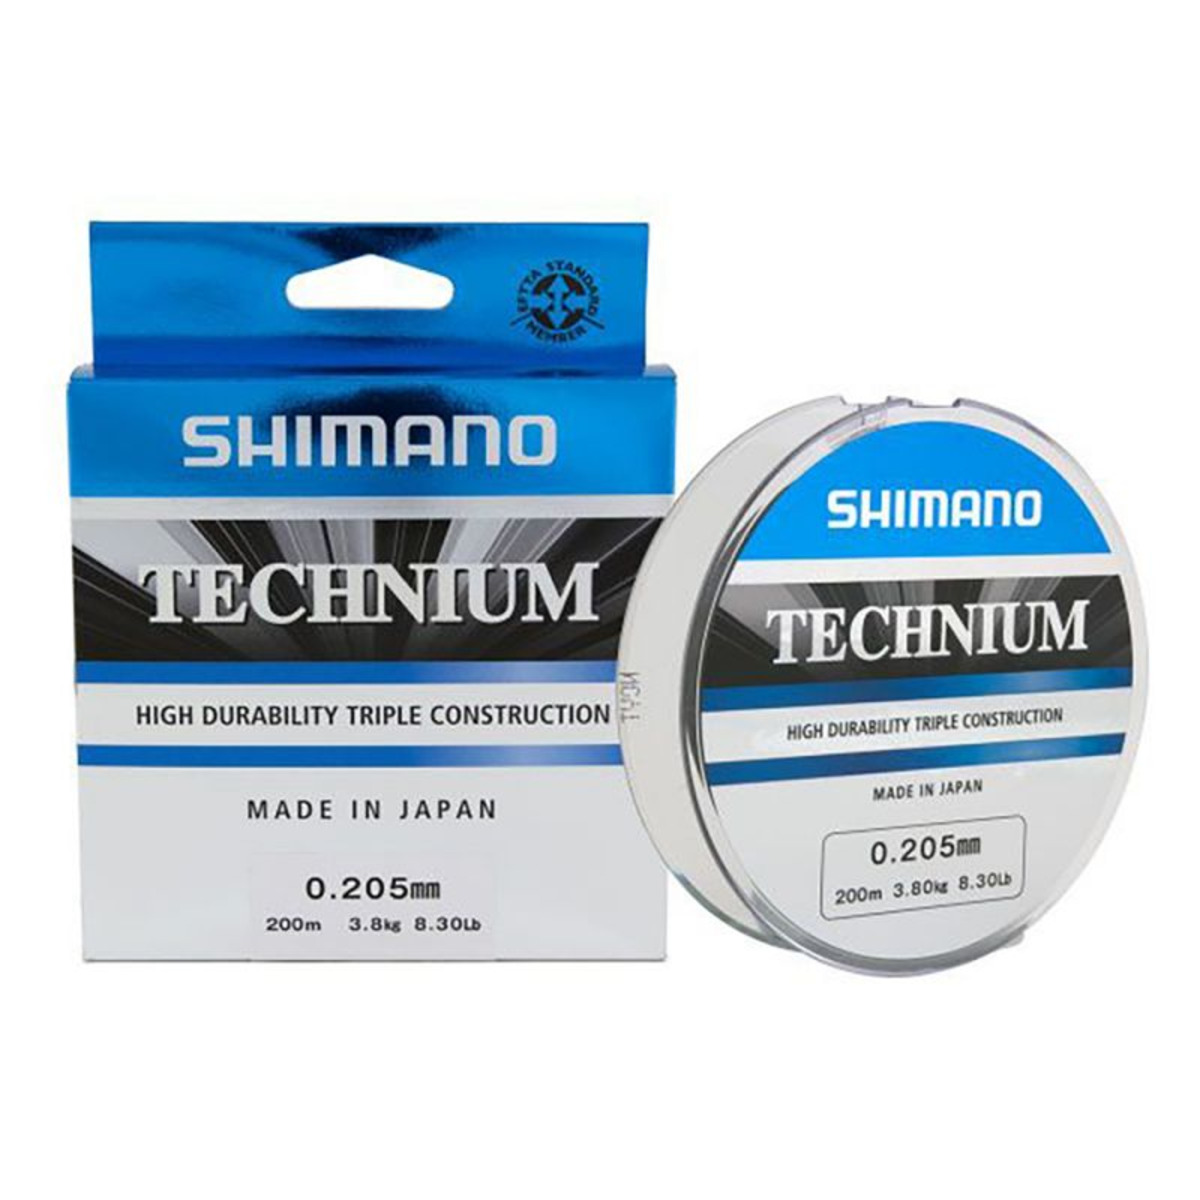 Shimano Technium 200 m - 200 m - 0.305 mm